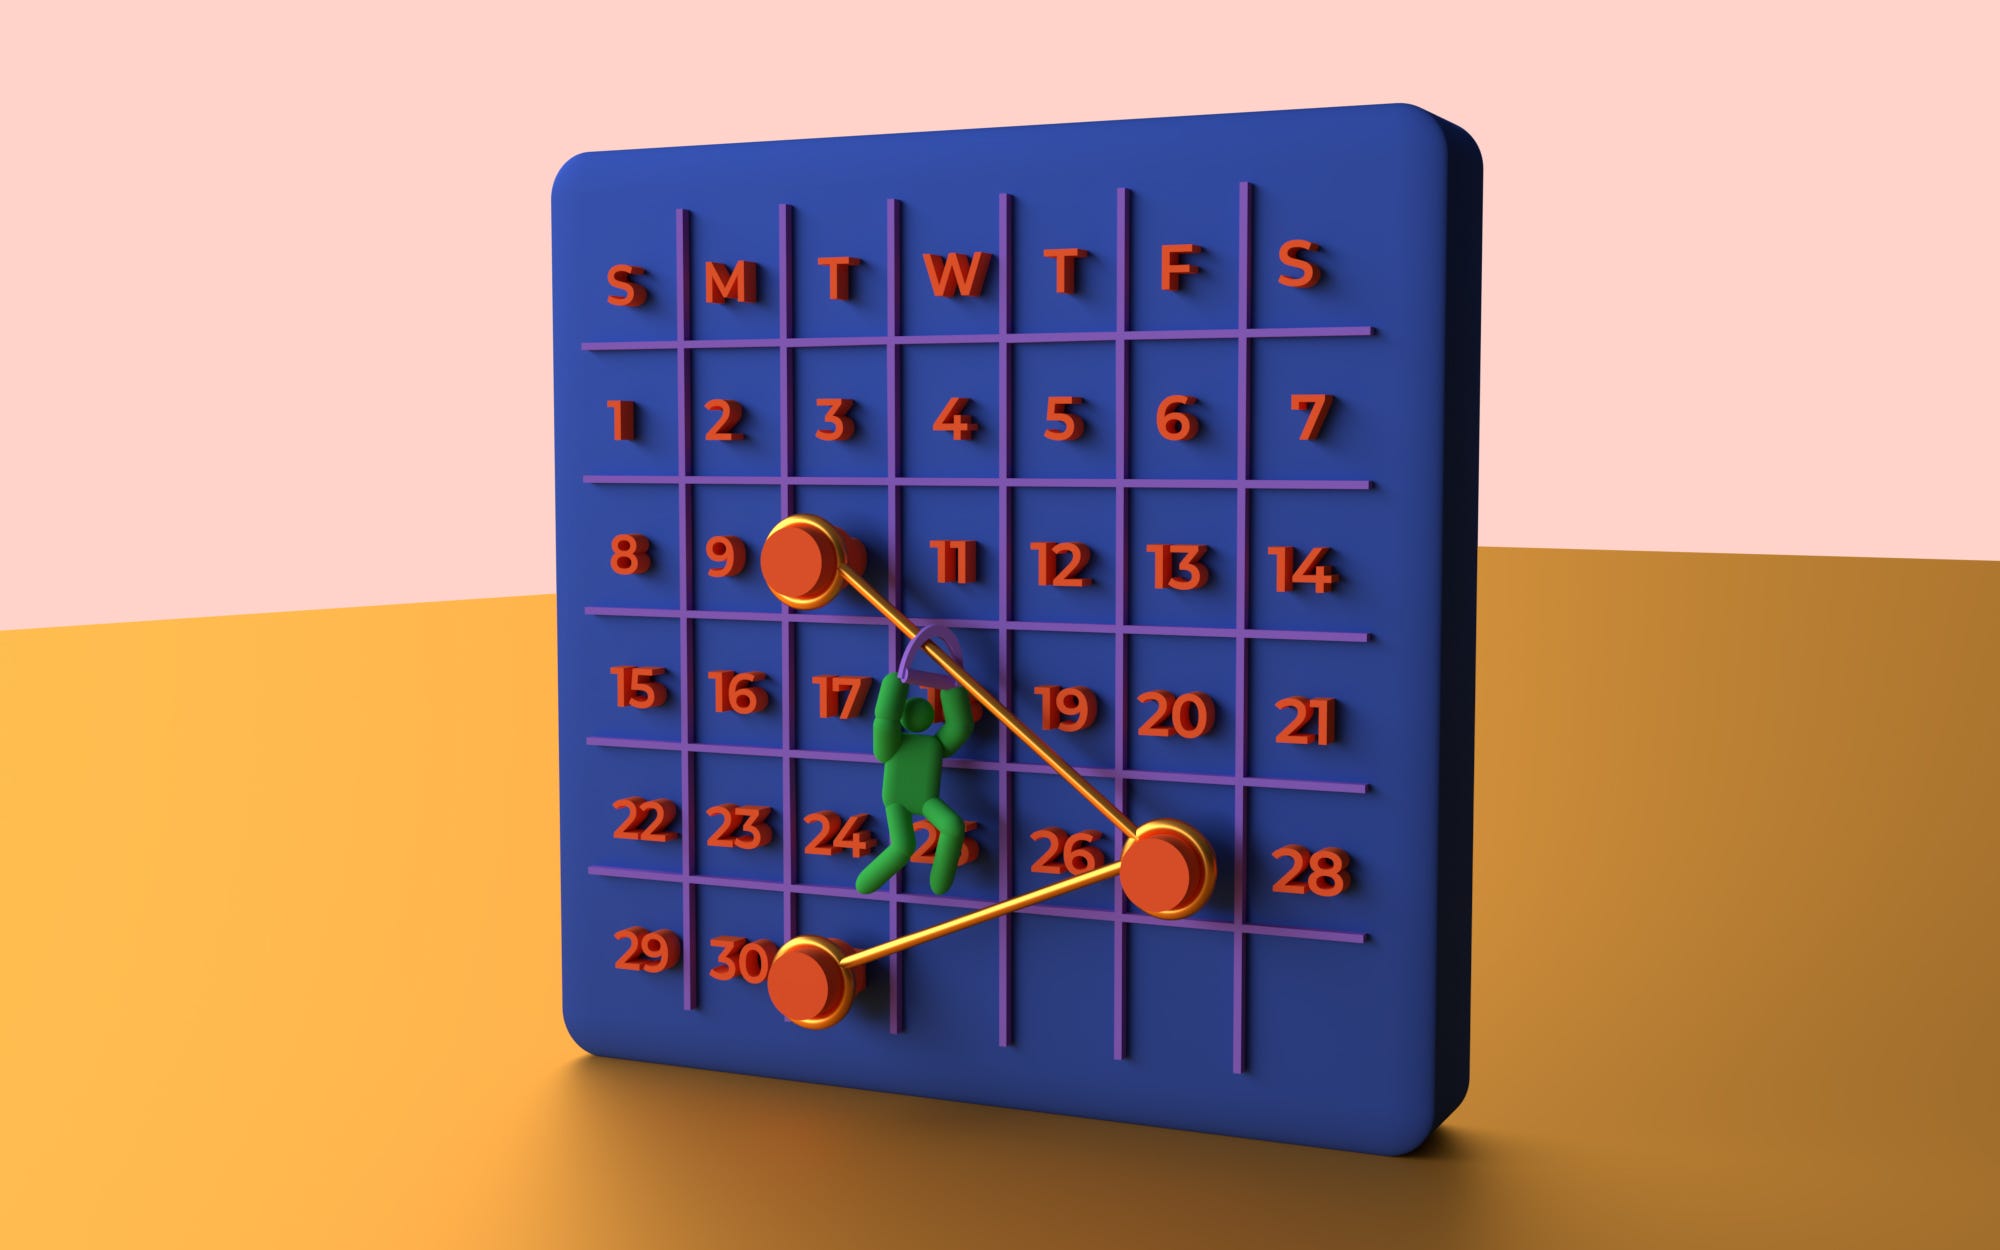 Quatro Jogos Sudoku Com Respostas De Nível Médio. Conjunto 29